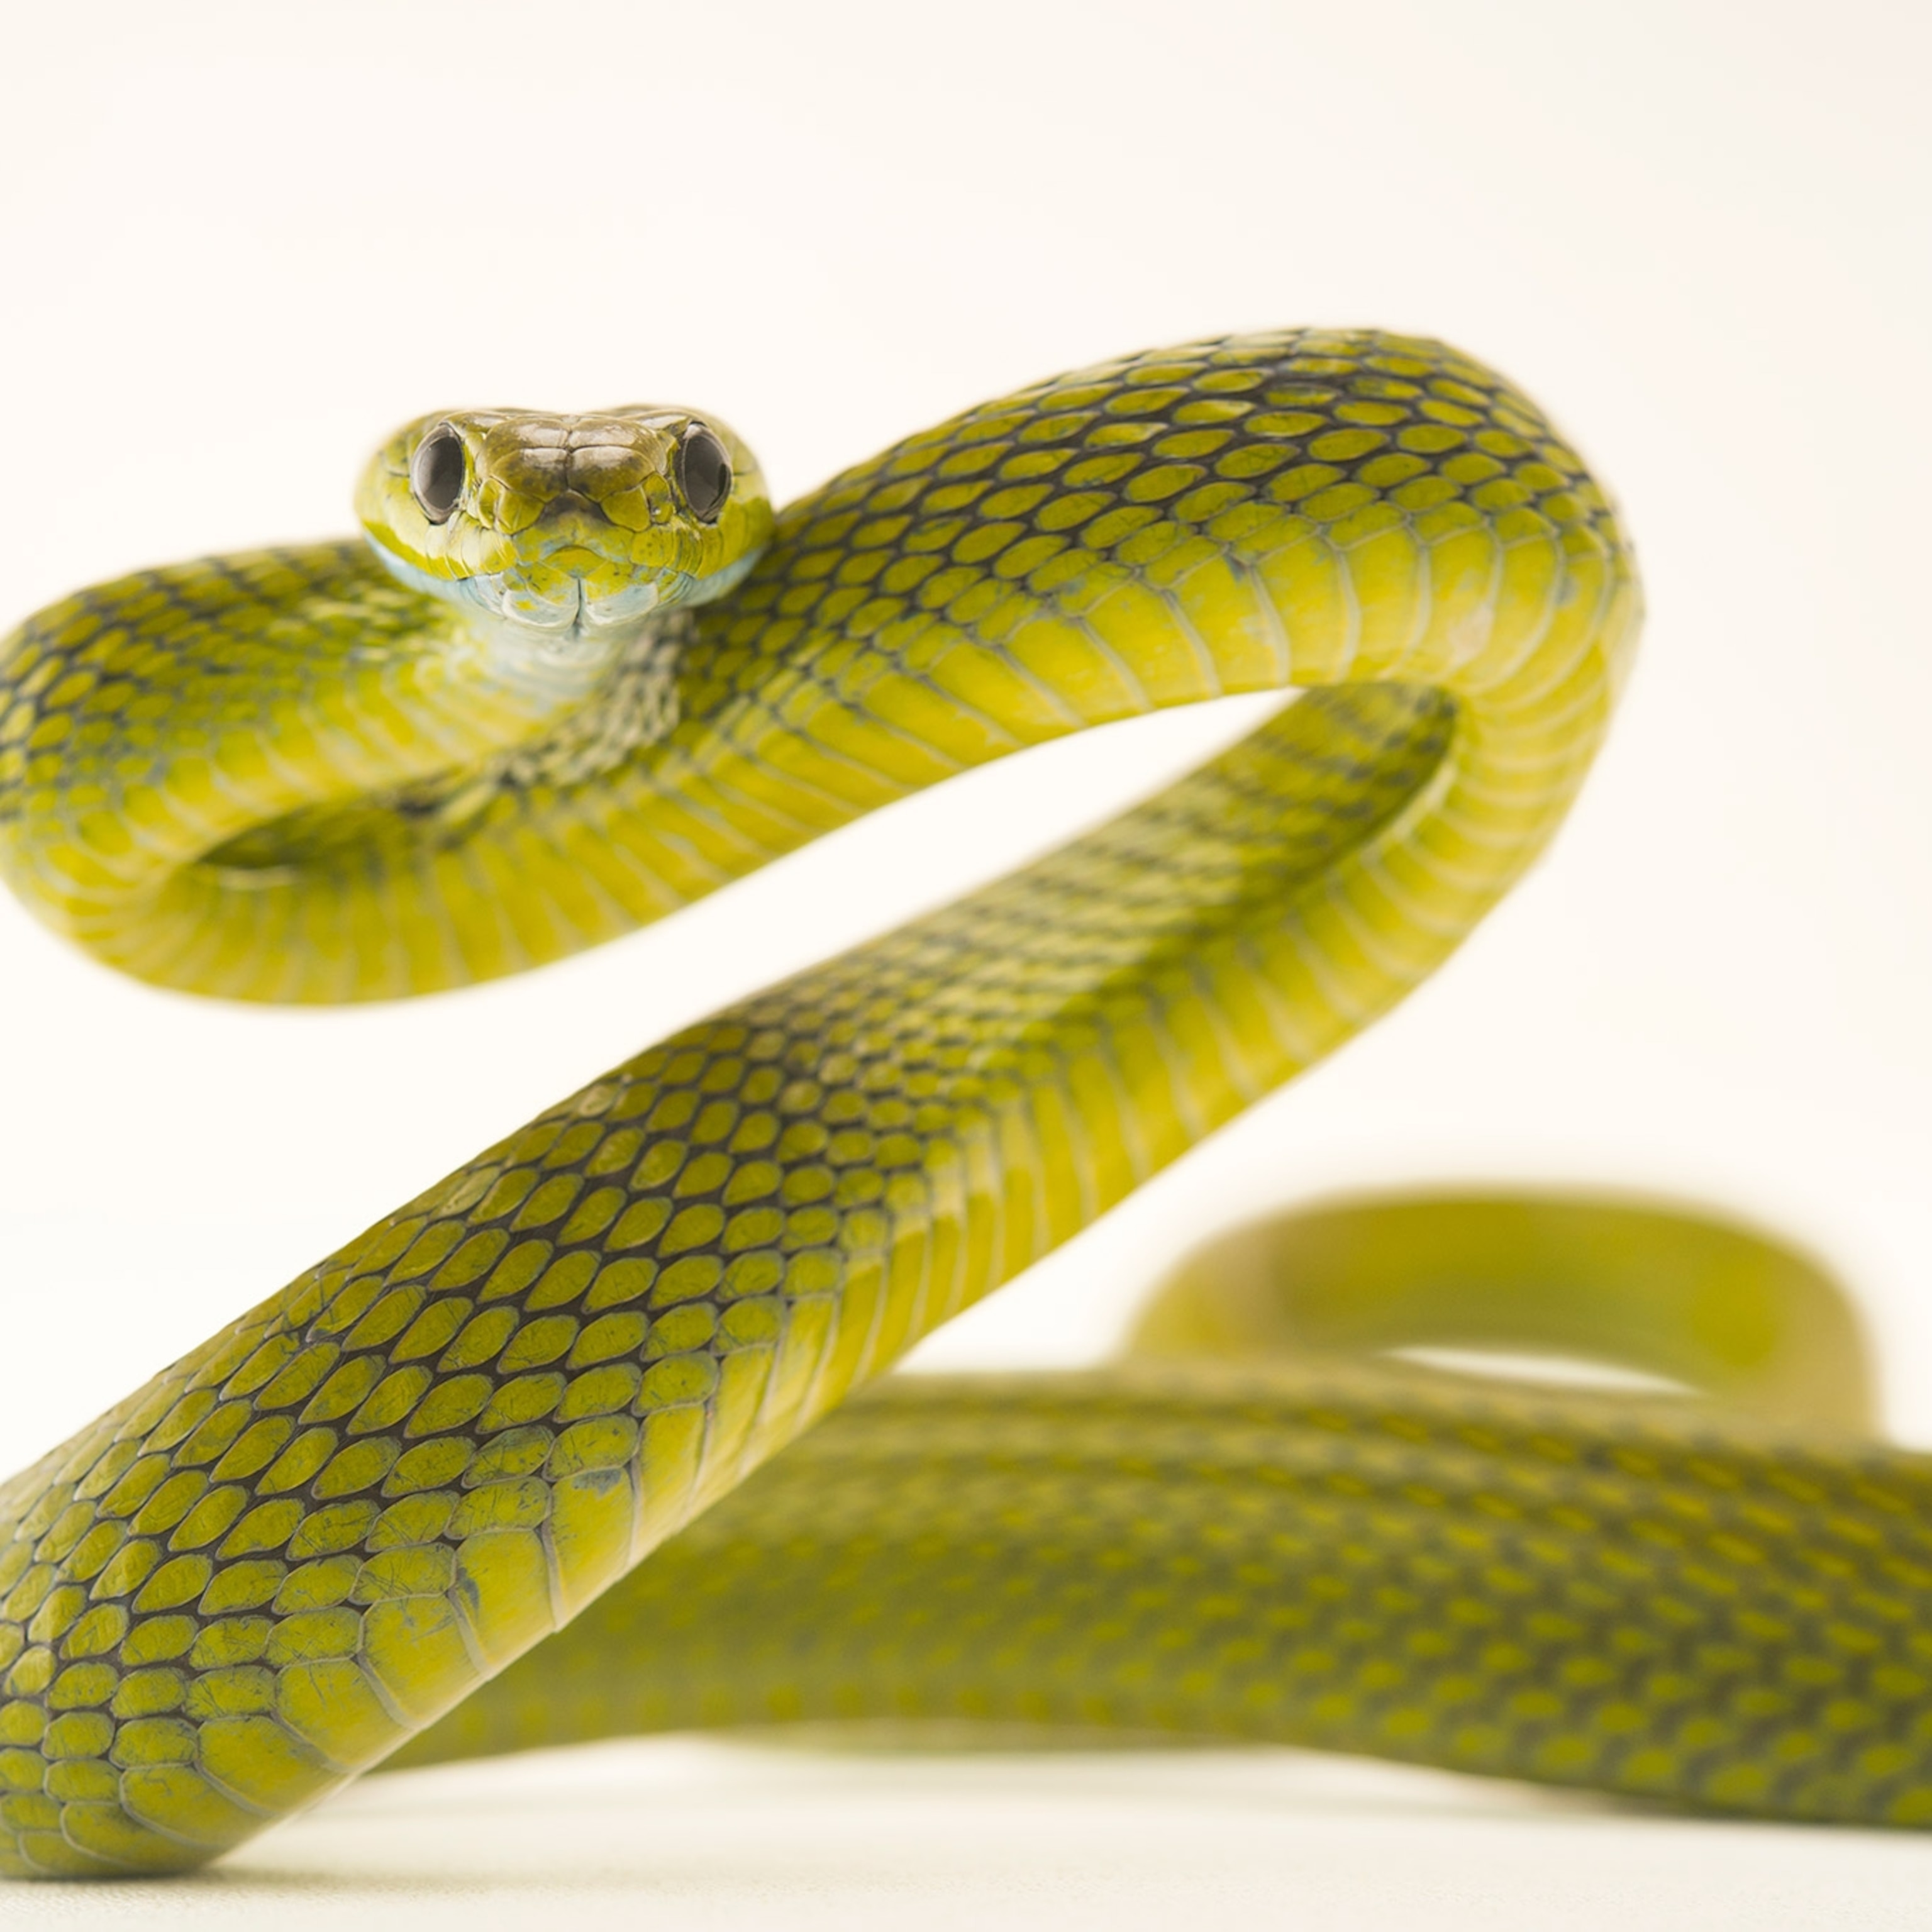 Understanding Snakes